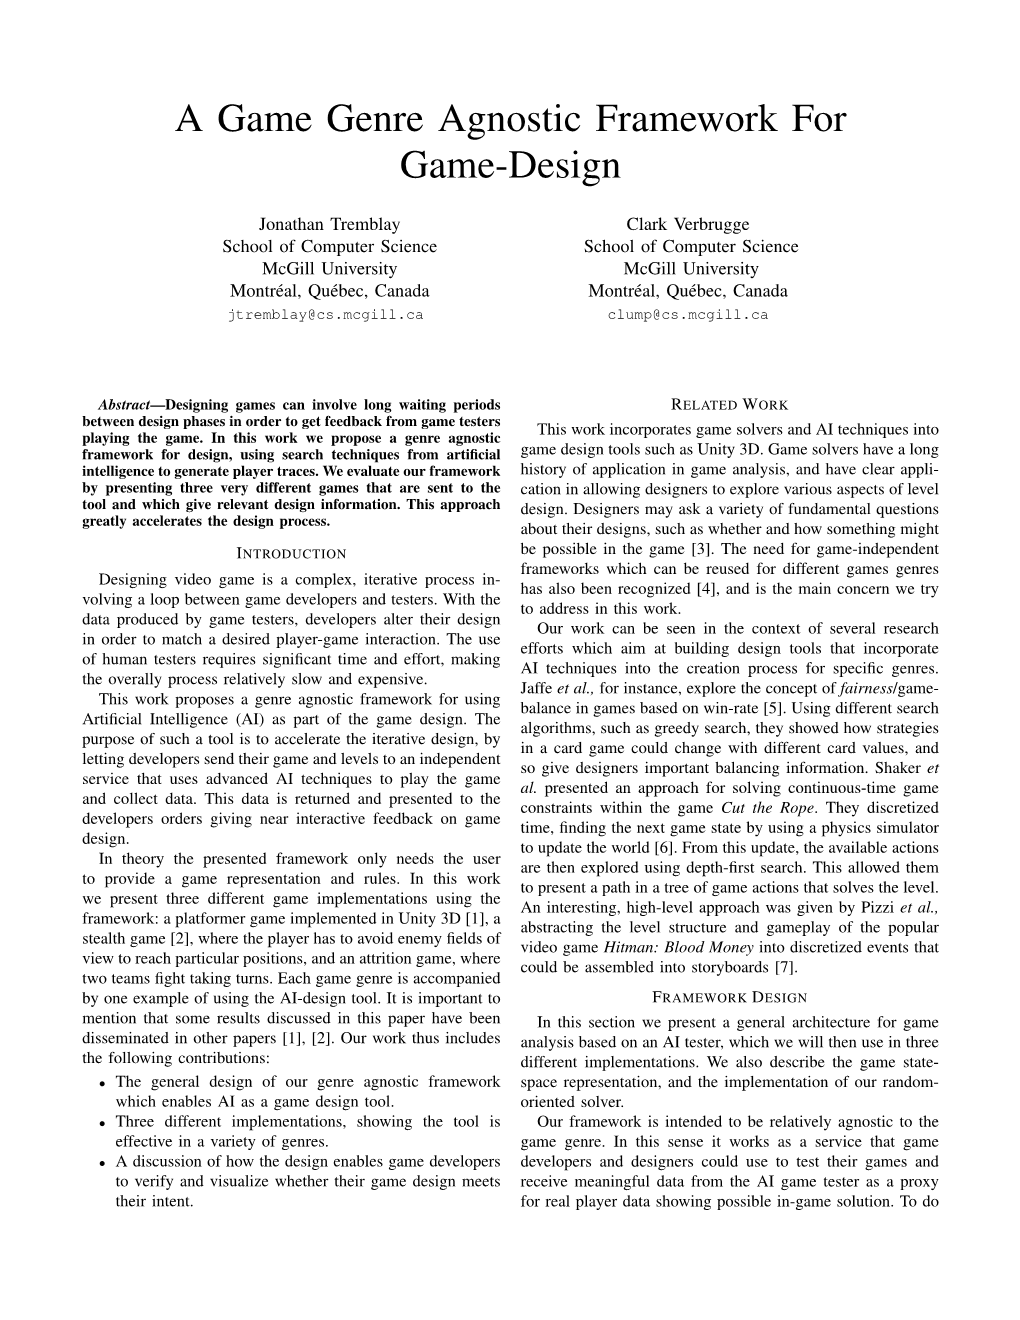 A Game Genre Agnostic Framework for Game-Design